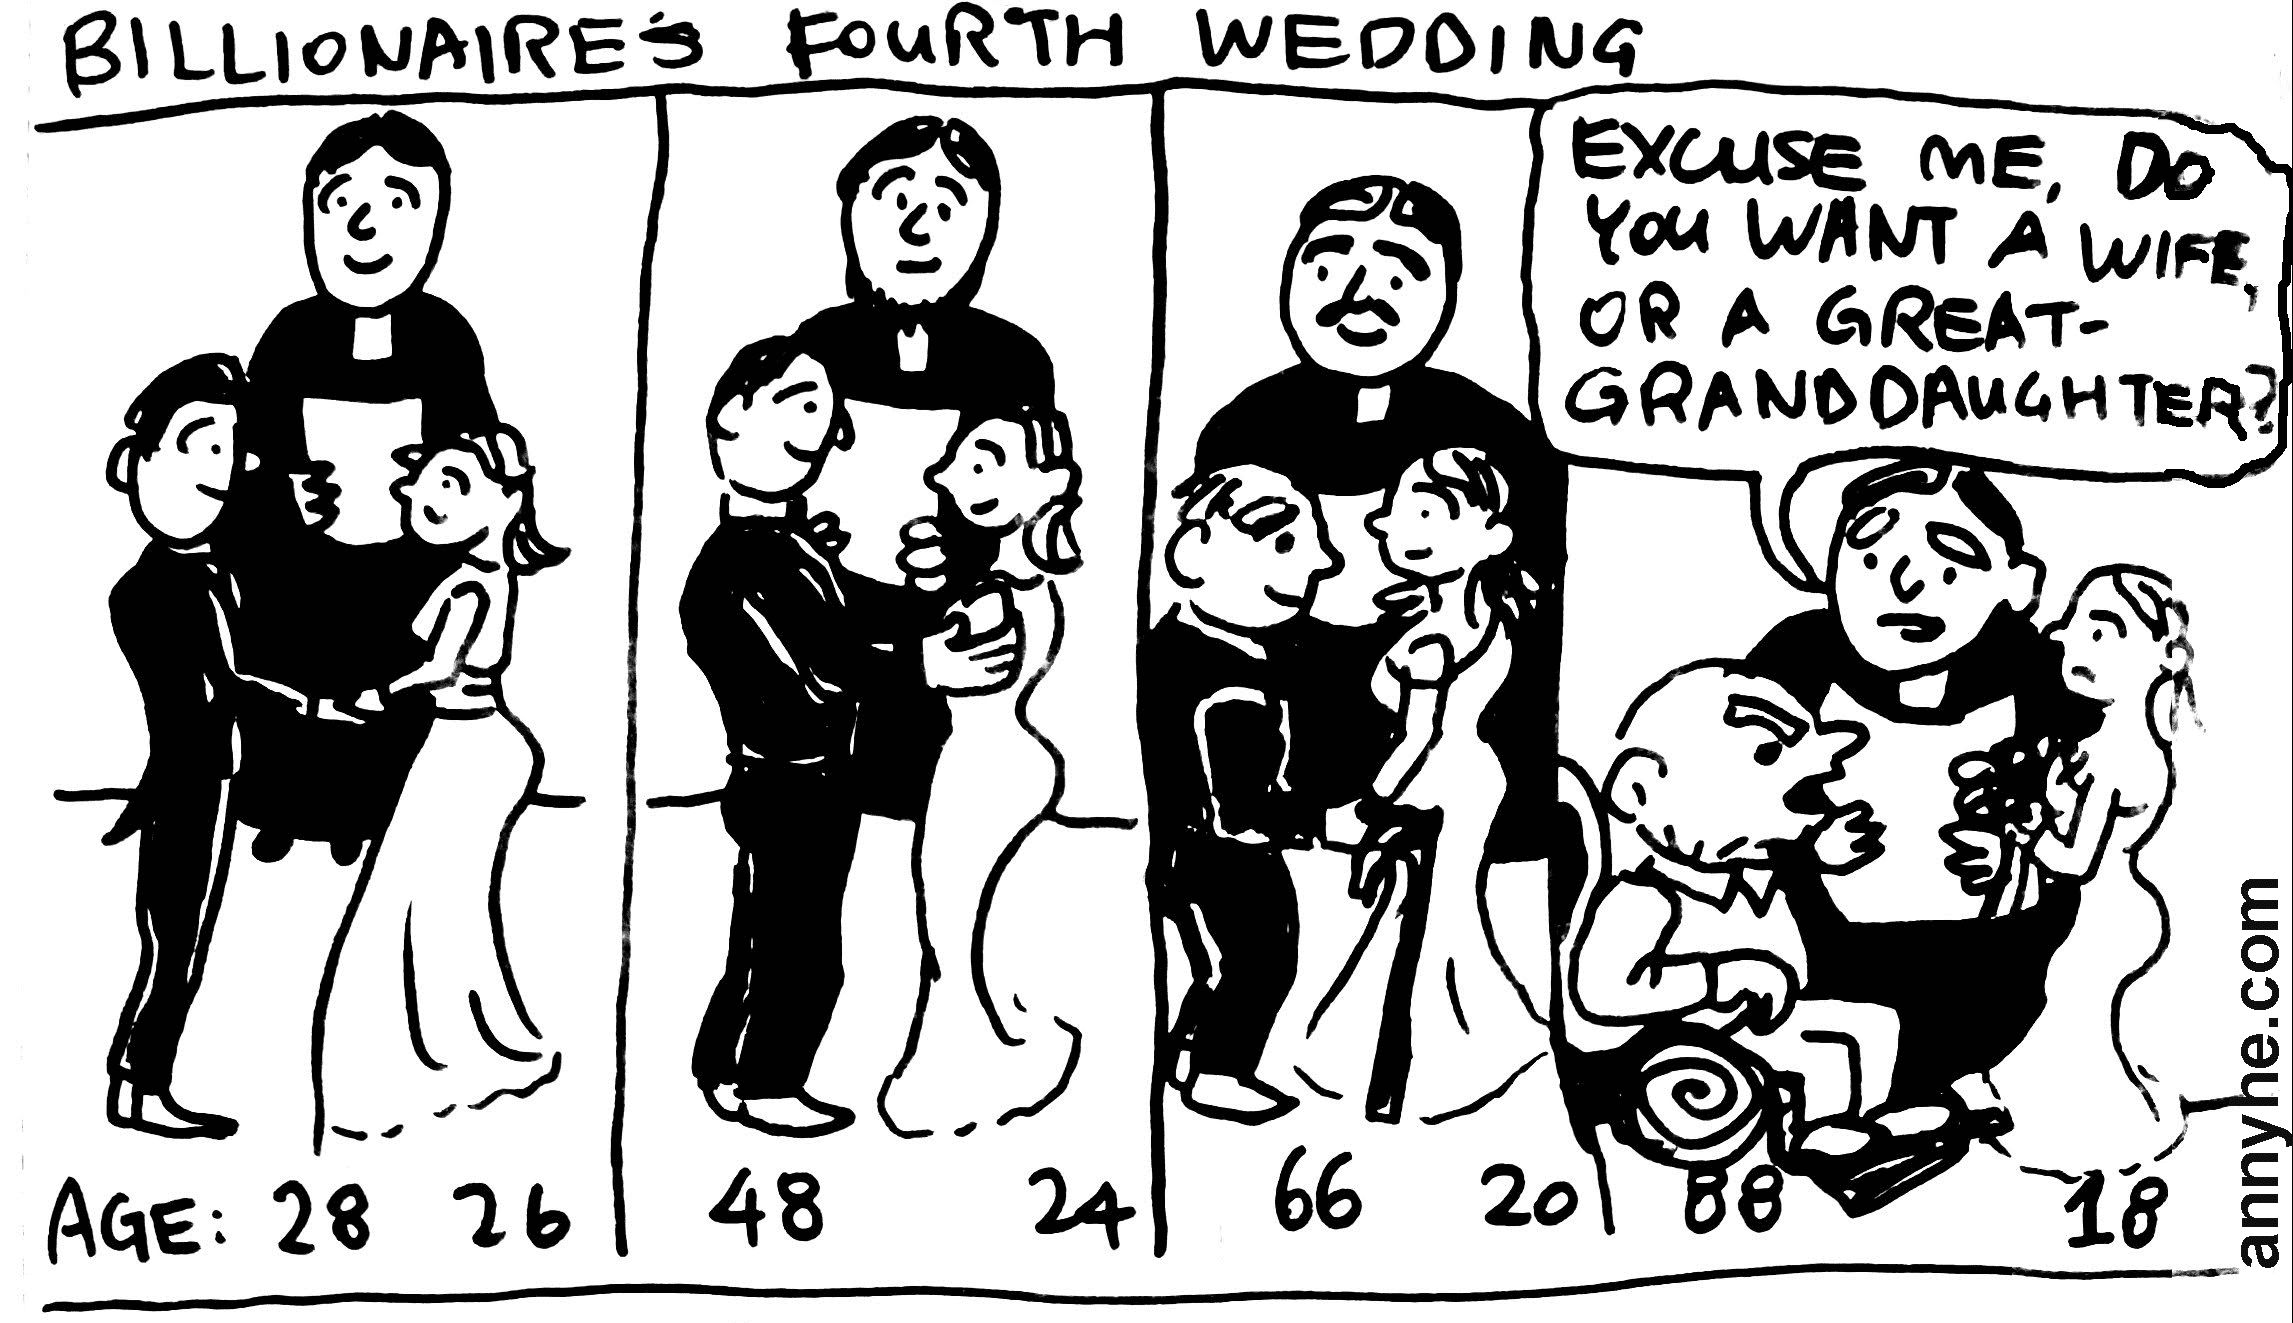 Billionaire's Fourth Wedding